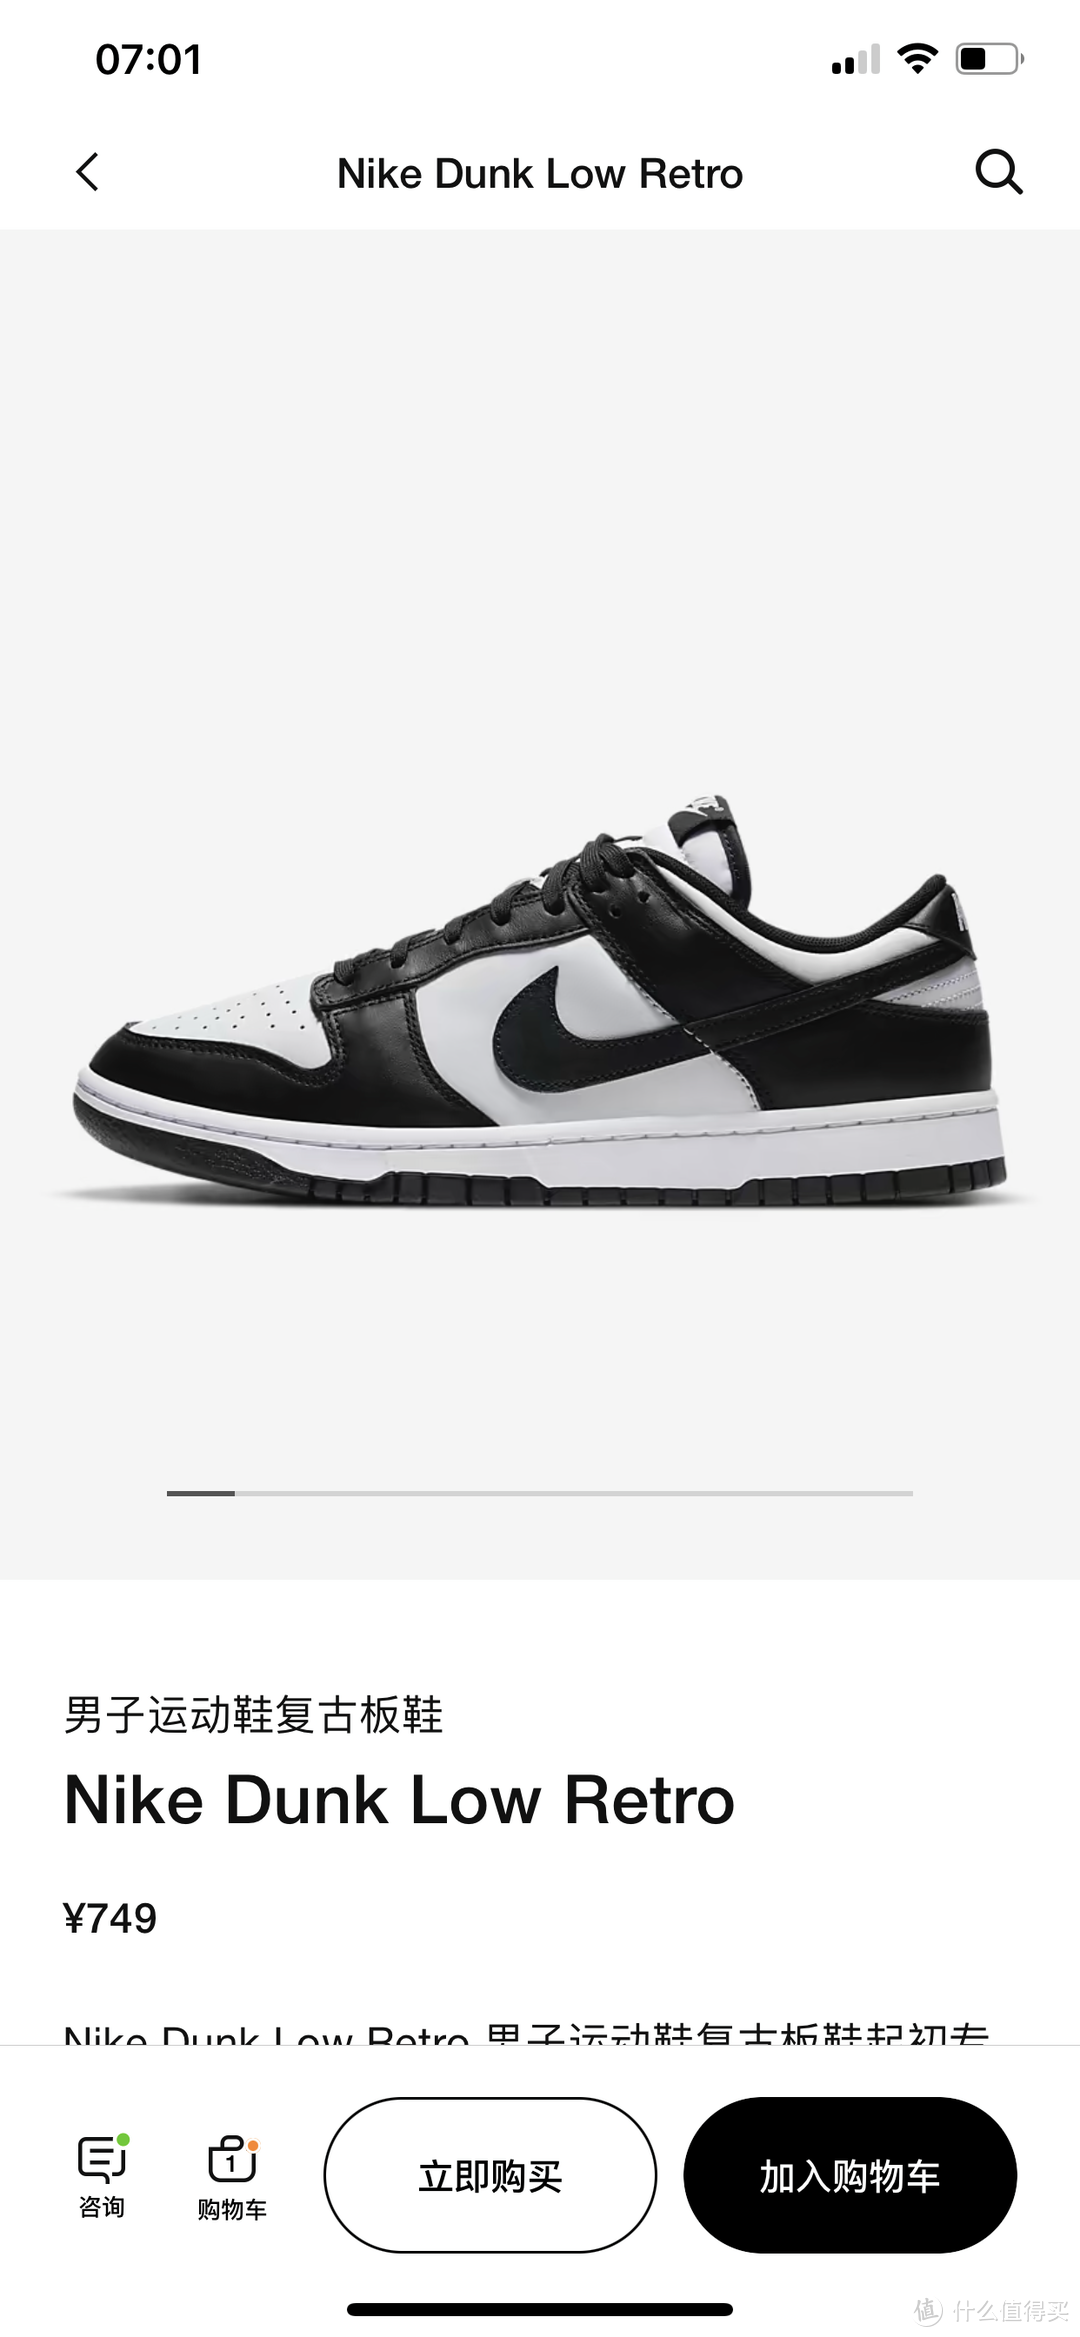 Nikedunk 熊猫鞋，官网正价699-749能买到，第三方现在已经跌破原价了！